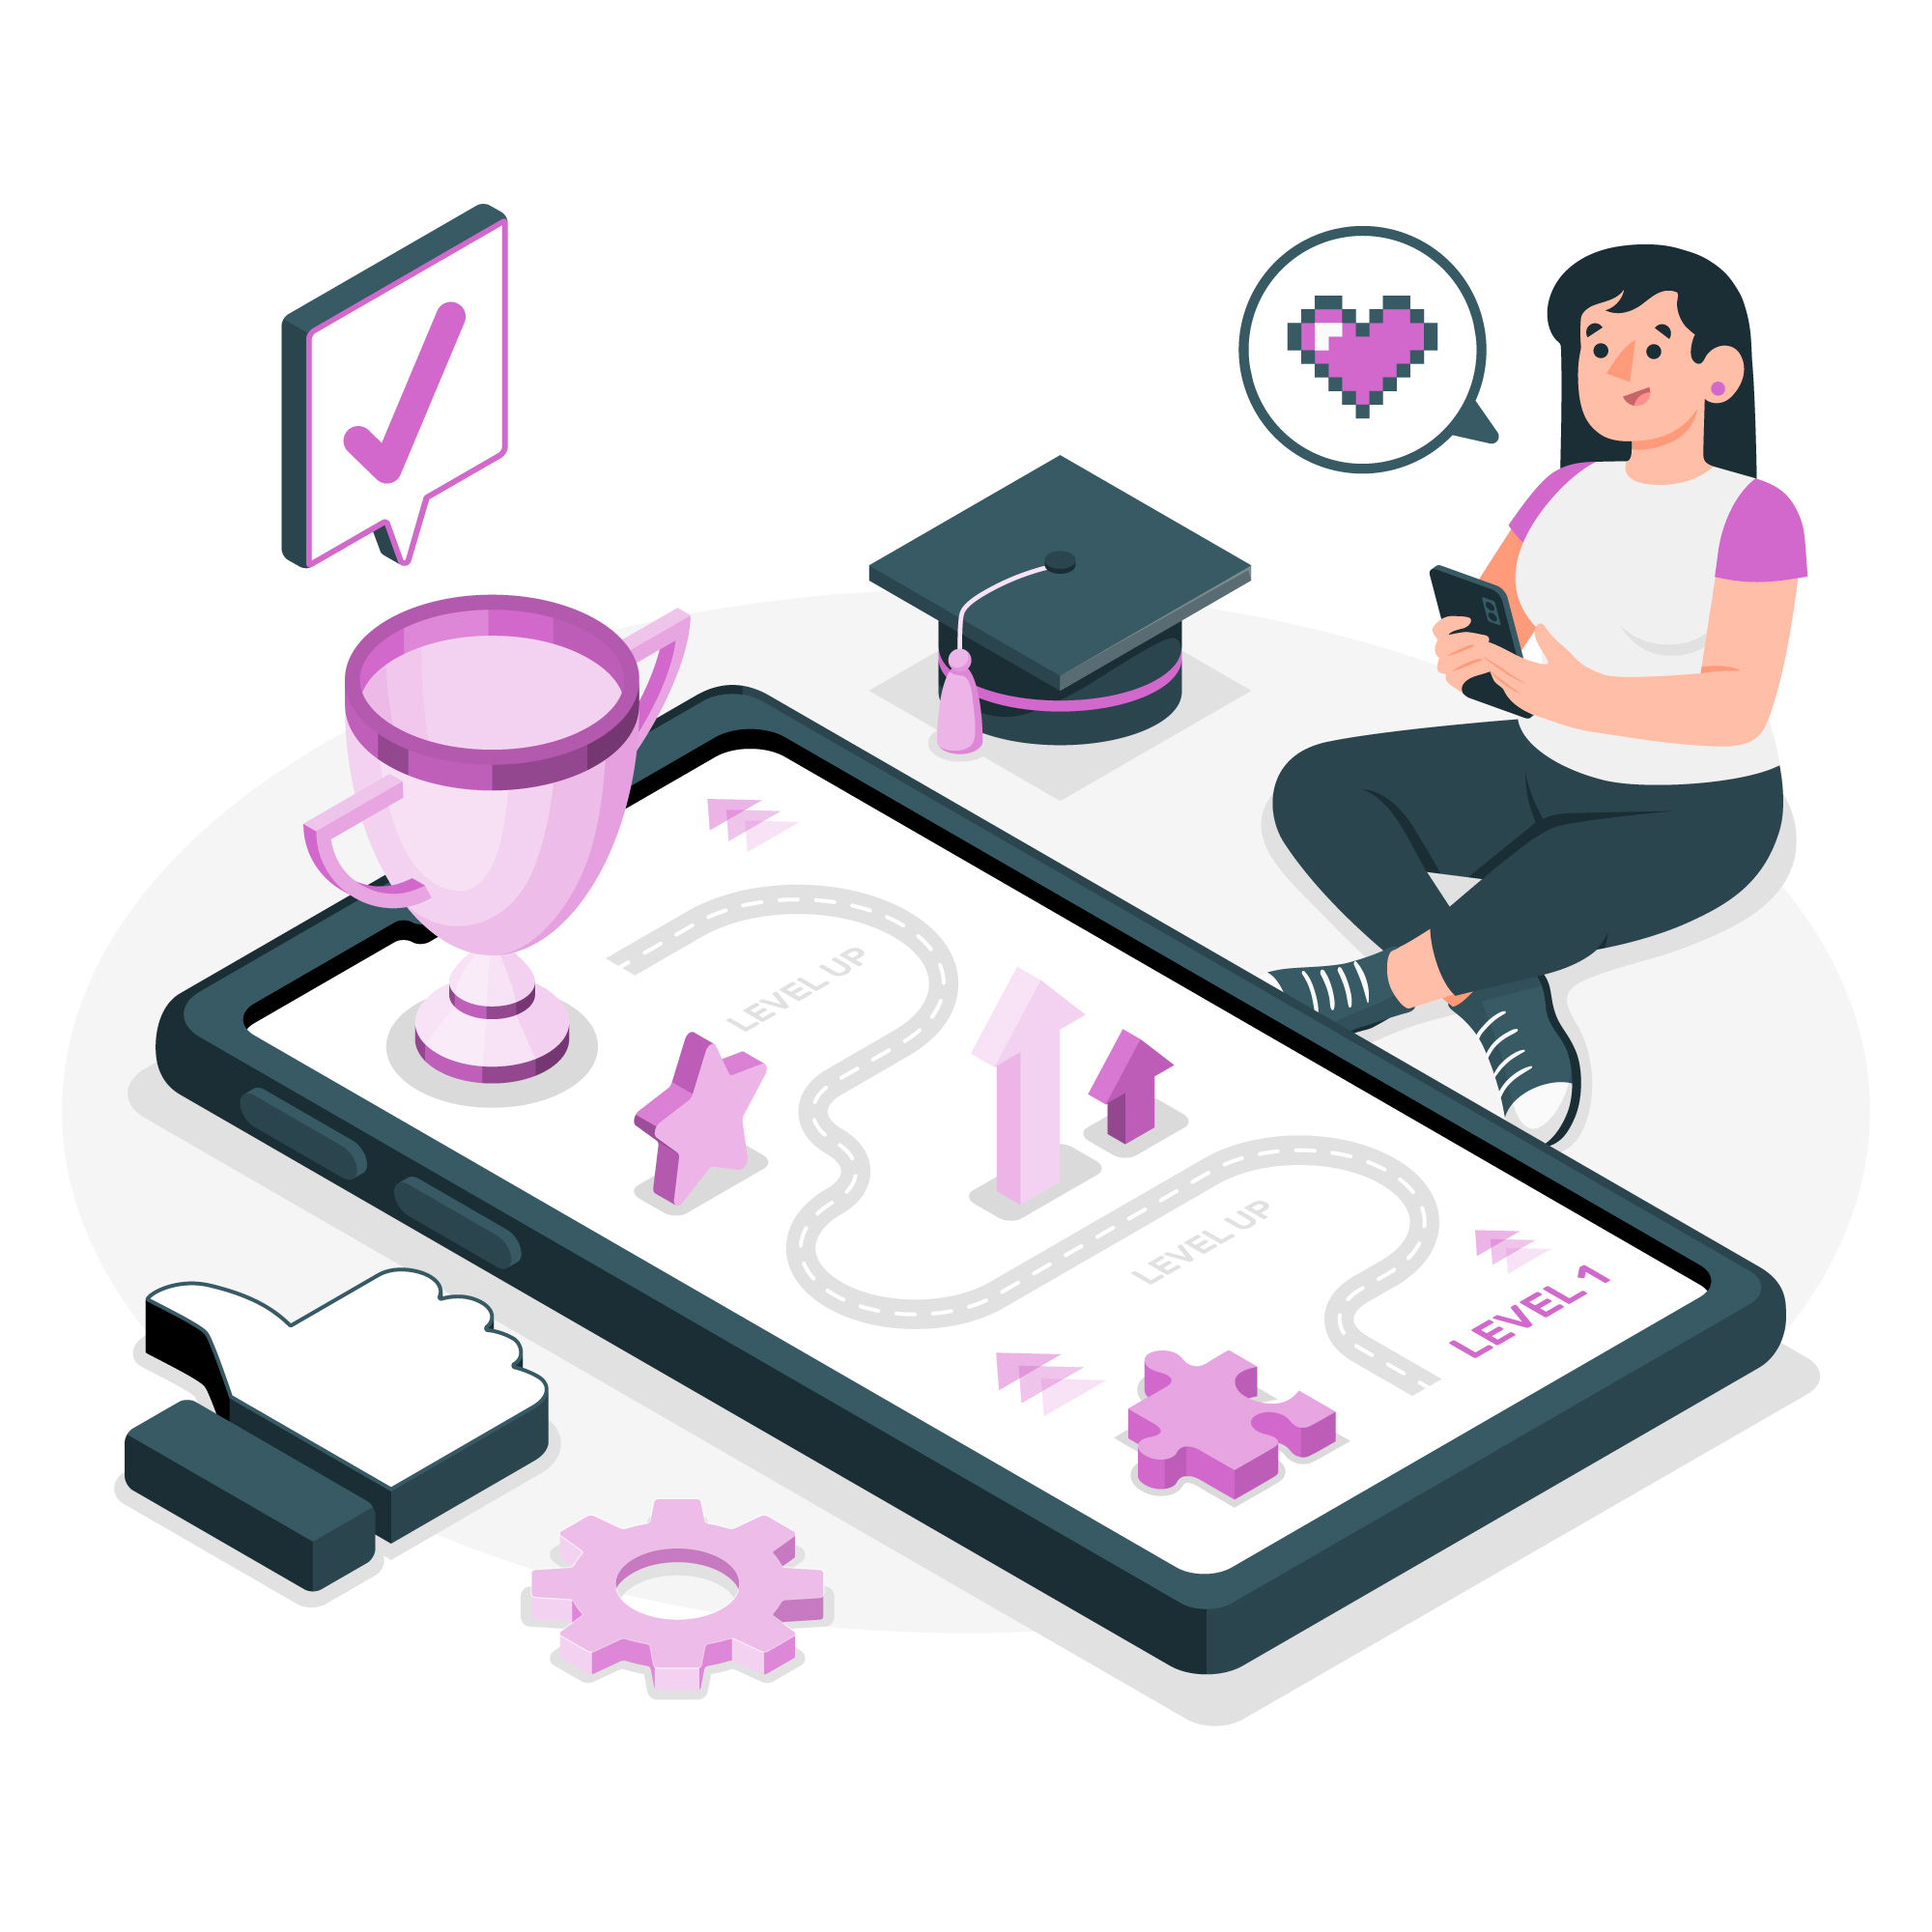 Ilustração de uma mulher sentada mexendo no celular. Na sua frente há um celular gigante com um mapa e alguns elementos de jogos na cor lilás.